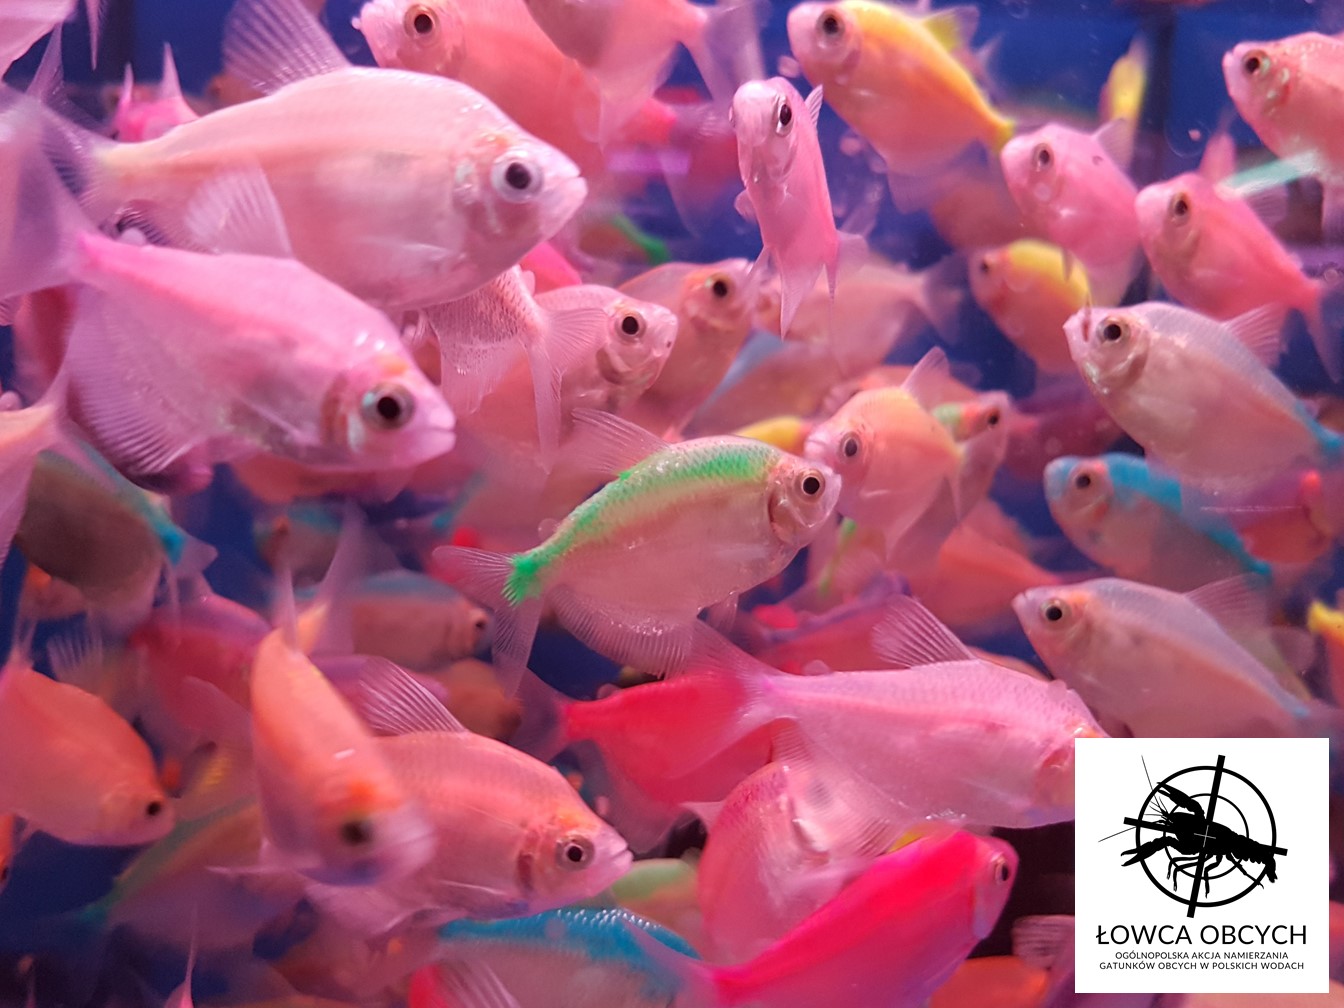 Żałobniczka zwyczajna barwiona metodą iniekcji podskórnej, Fish Market w Kantonie, Chiny (Fot. Rafał Maciaszek)